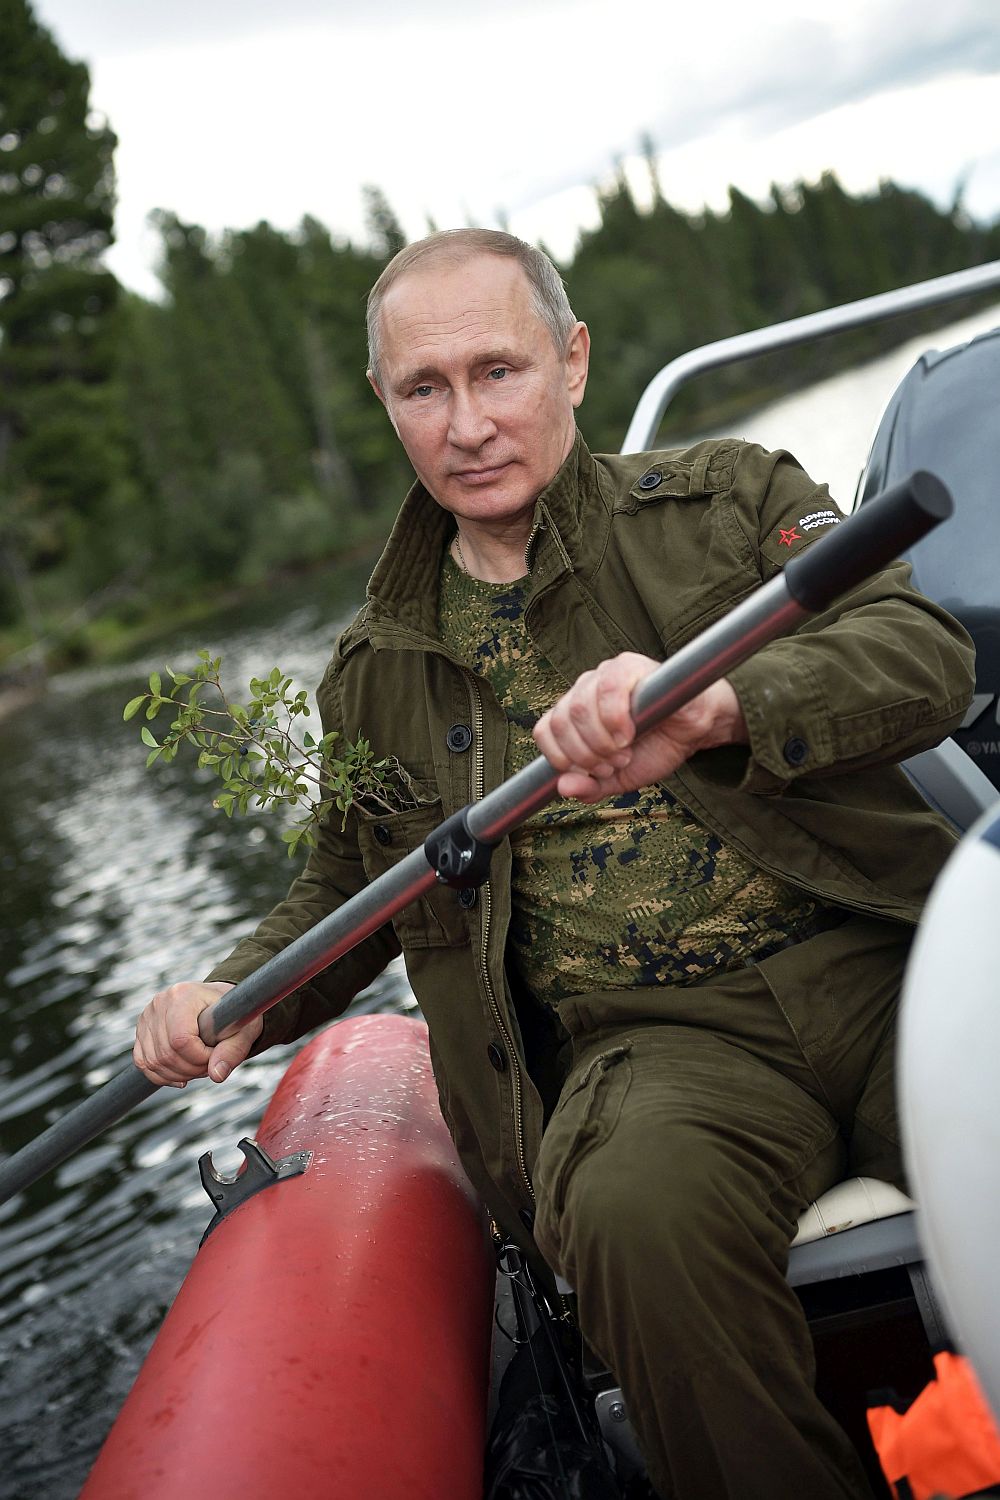 Владимир Путин на риба в Южен Сибир